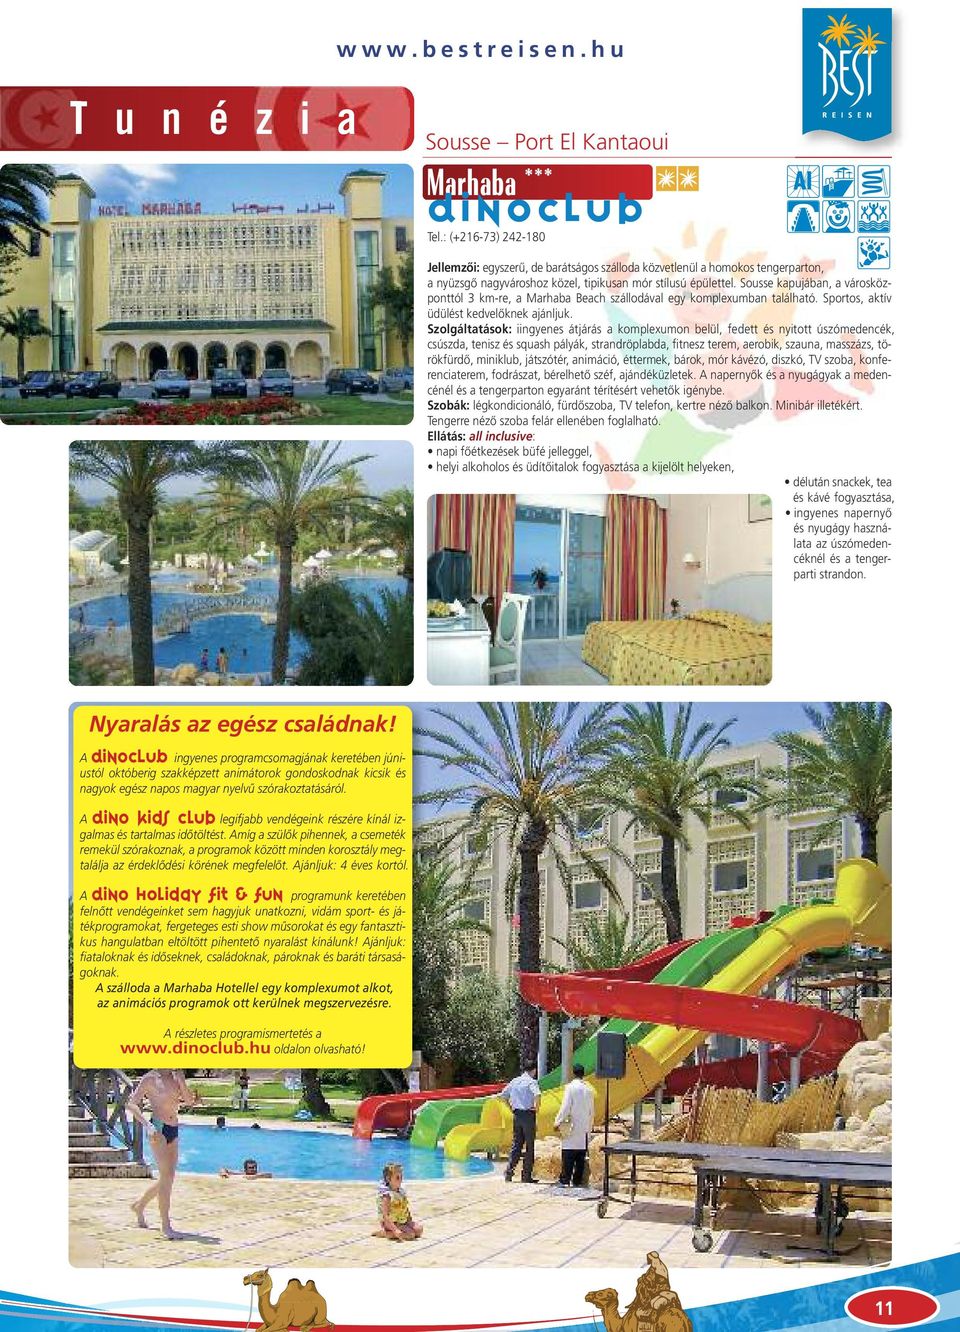 Sousse kapujában, a városközponttól 3 km-re, a Marhaba Beach szállodával egy komplexumban található. Sportos, aktív üdülést kedvelôknek ajánljuk.